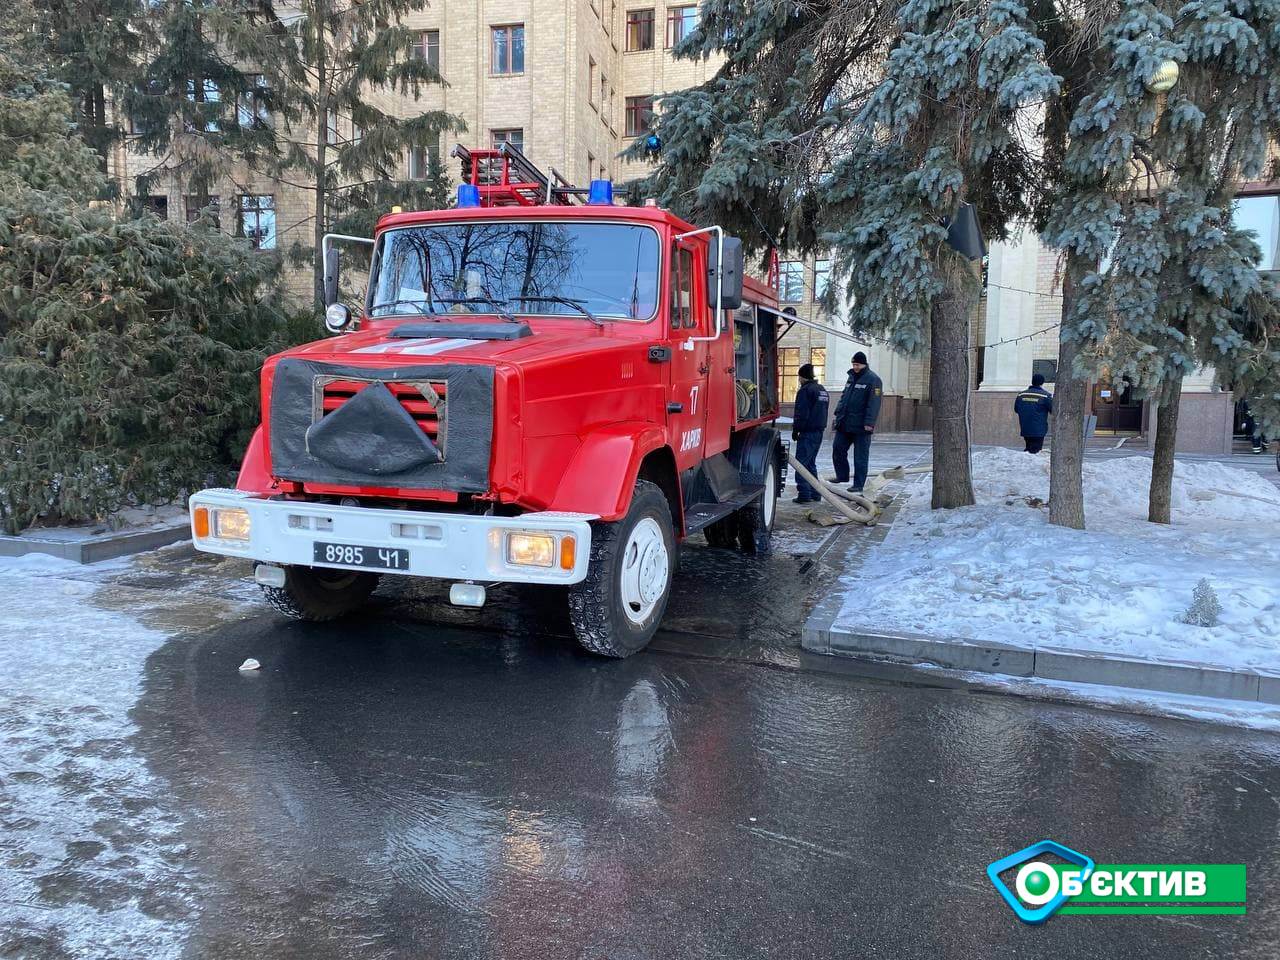 Каразинский университет работает в штатном режиме, проходит проверка по факту пожара